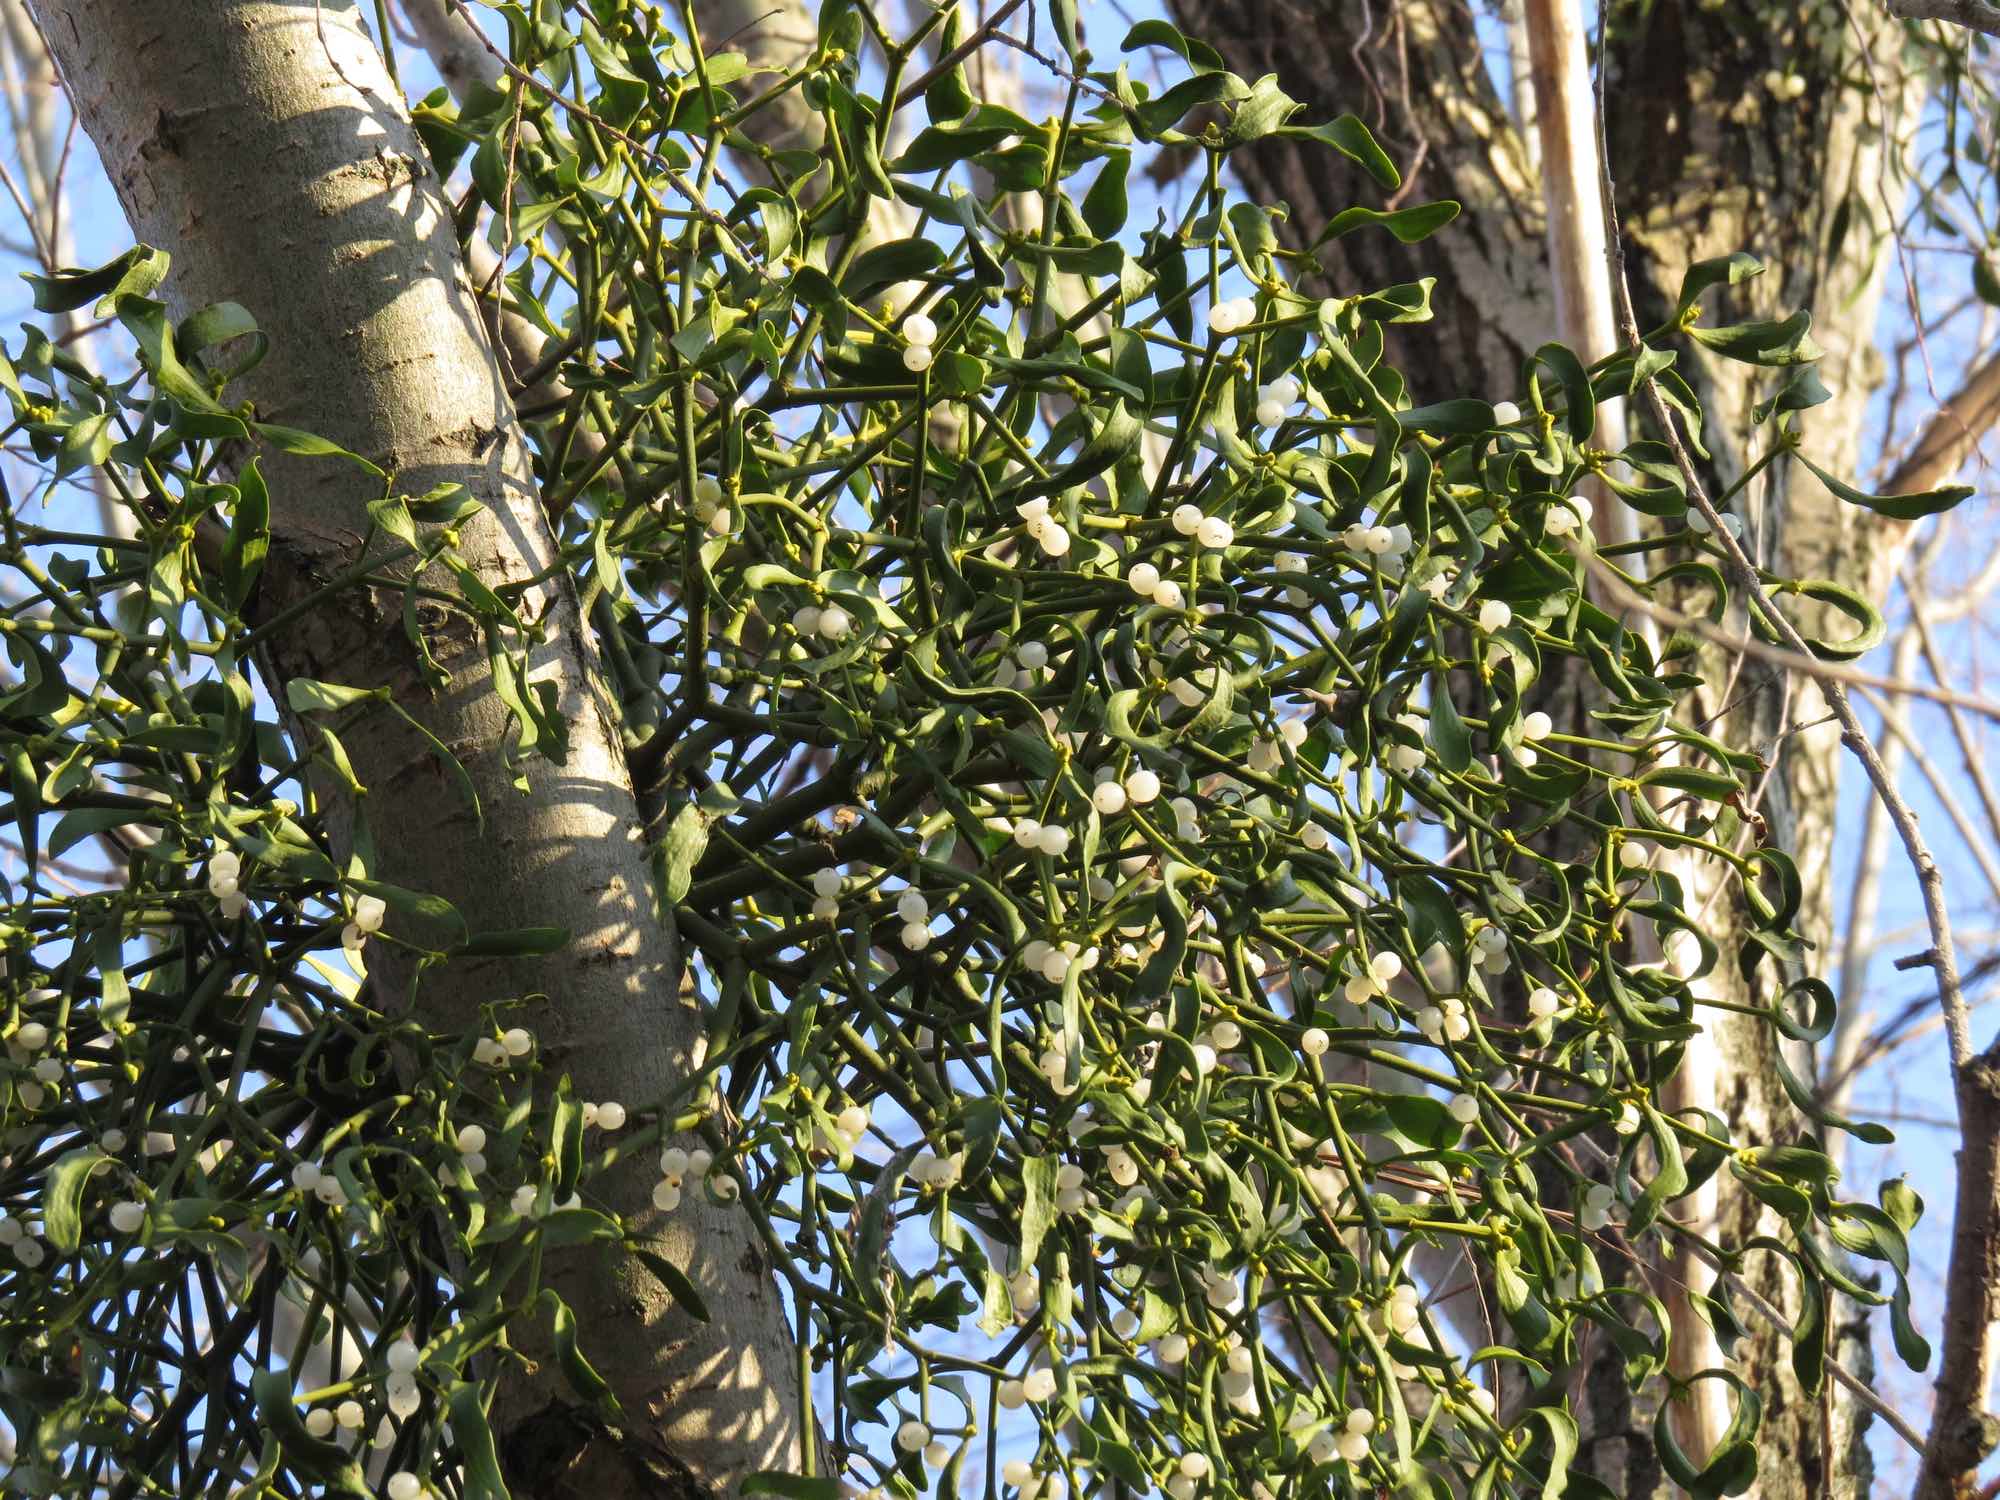 American mistletoe on a branch